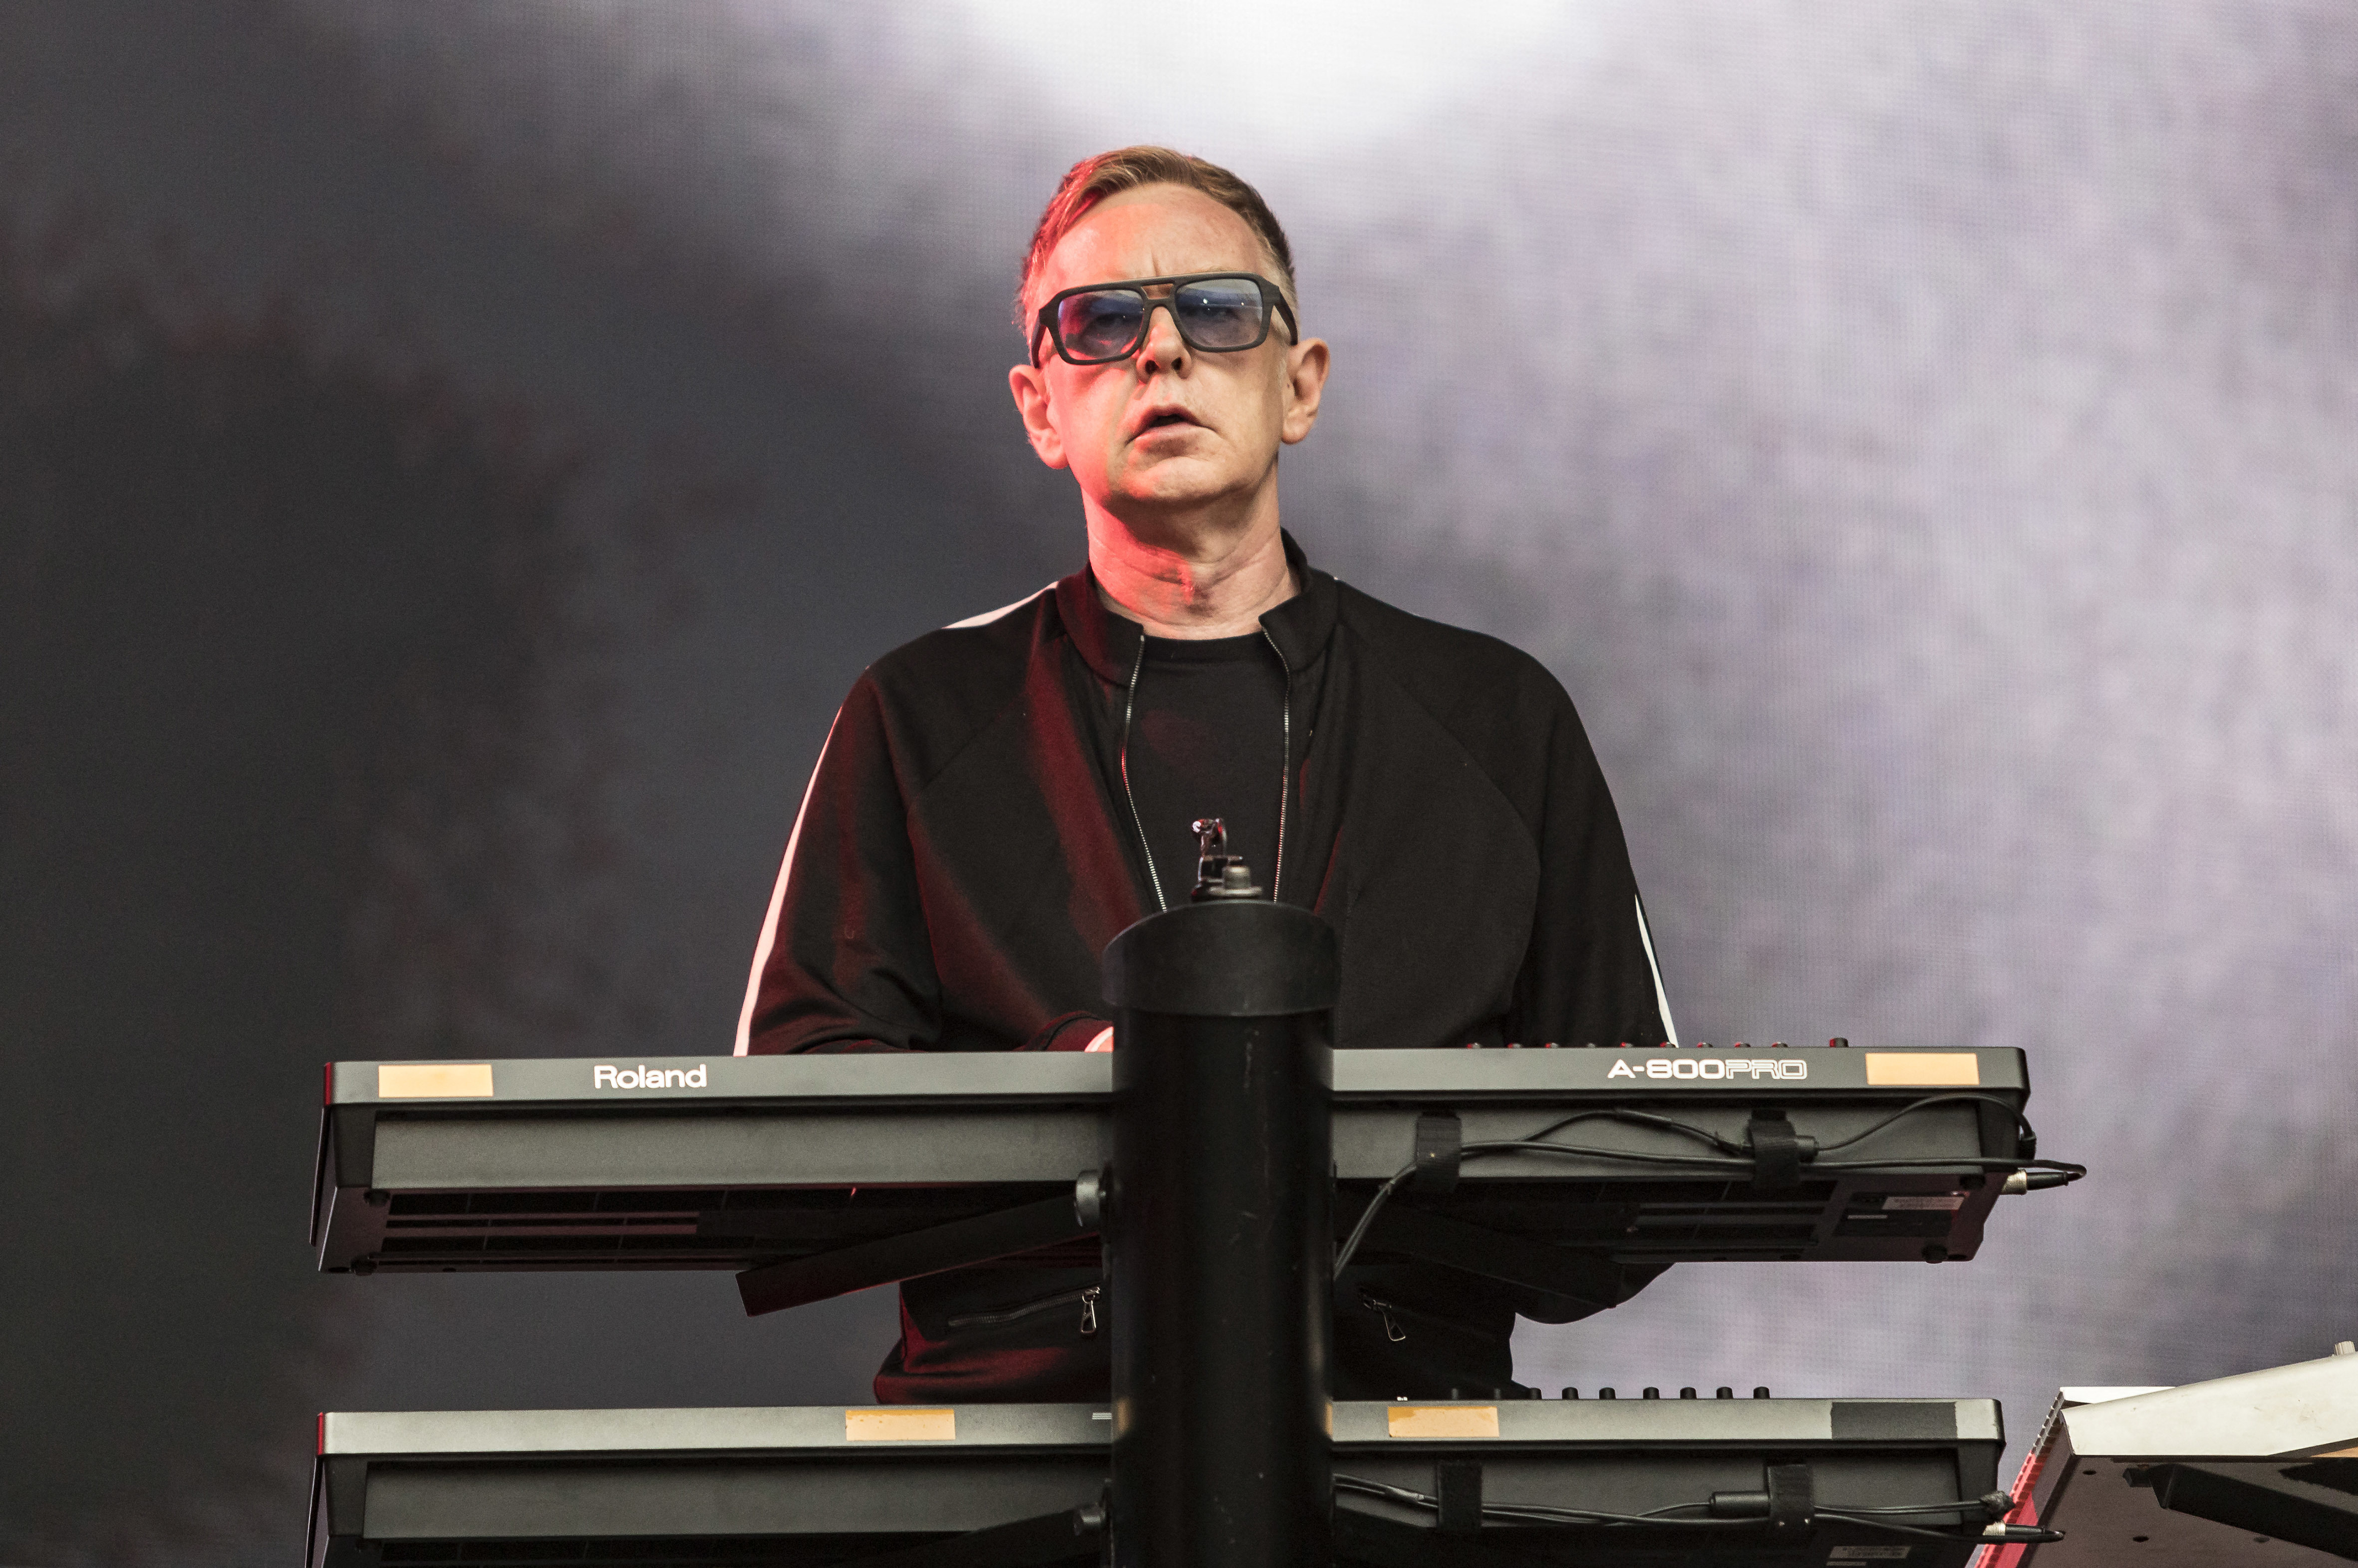 Meghalt Andy Fletcher, a Depeche Mode billentyűse